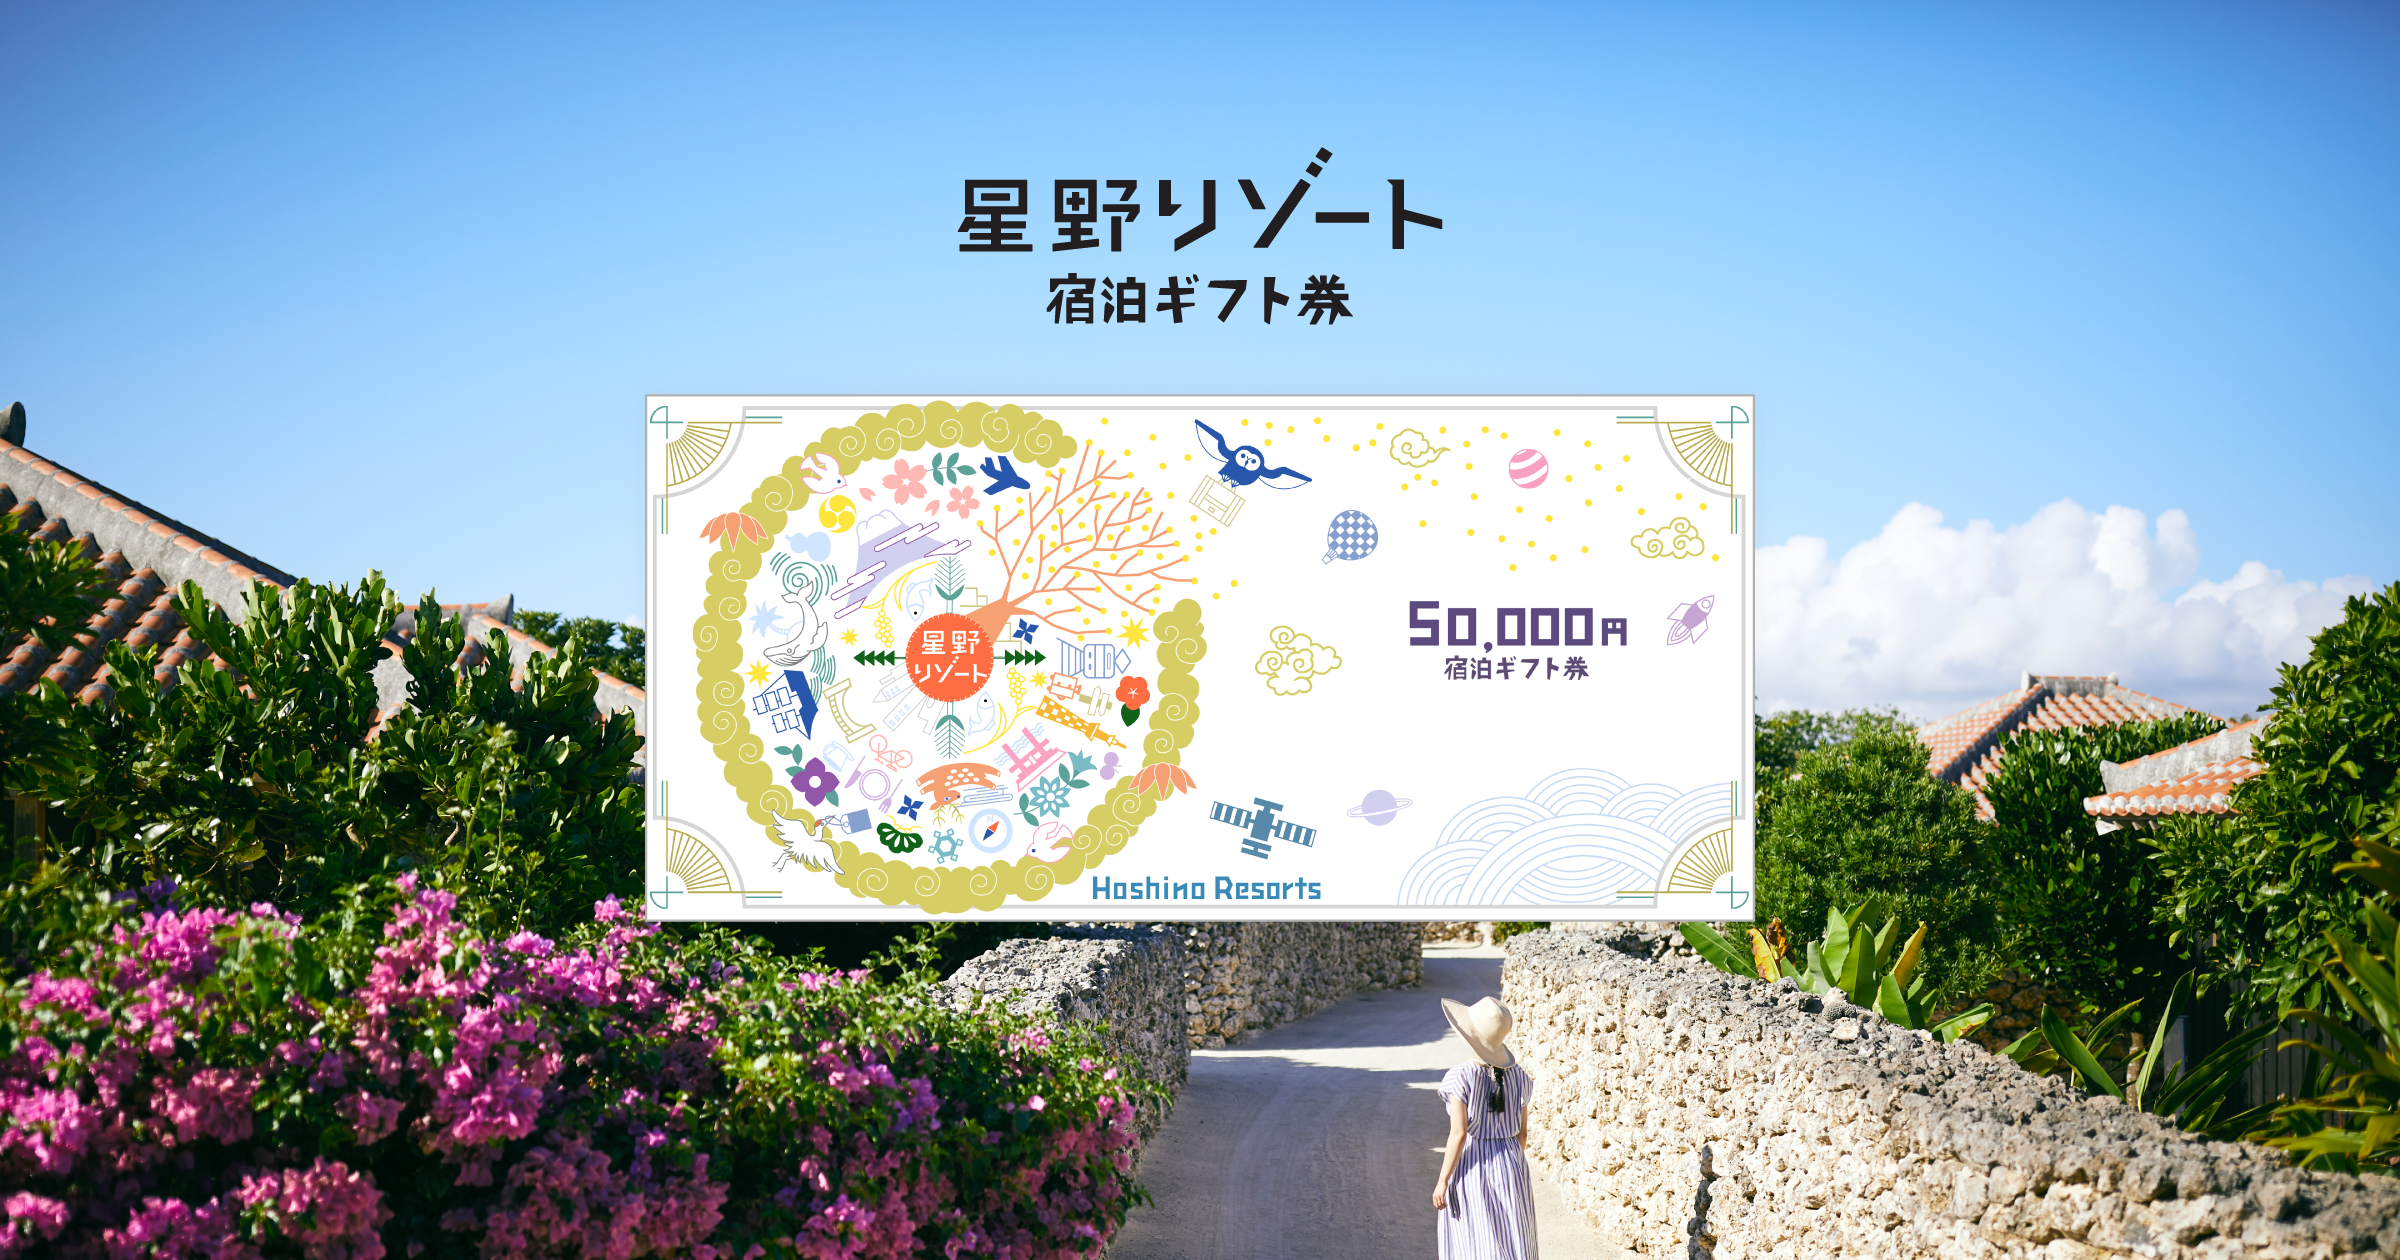 優待券/割引券星野リゾート宿泊ギフト券50000円5万円分 Hoshino Resorts